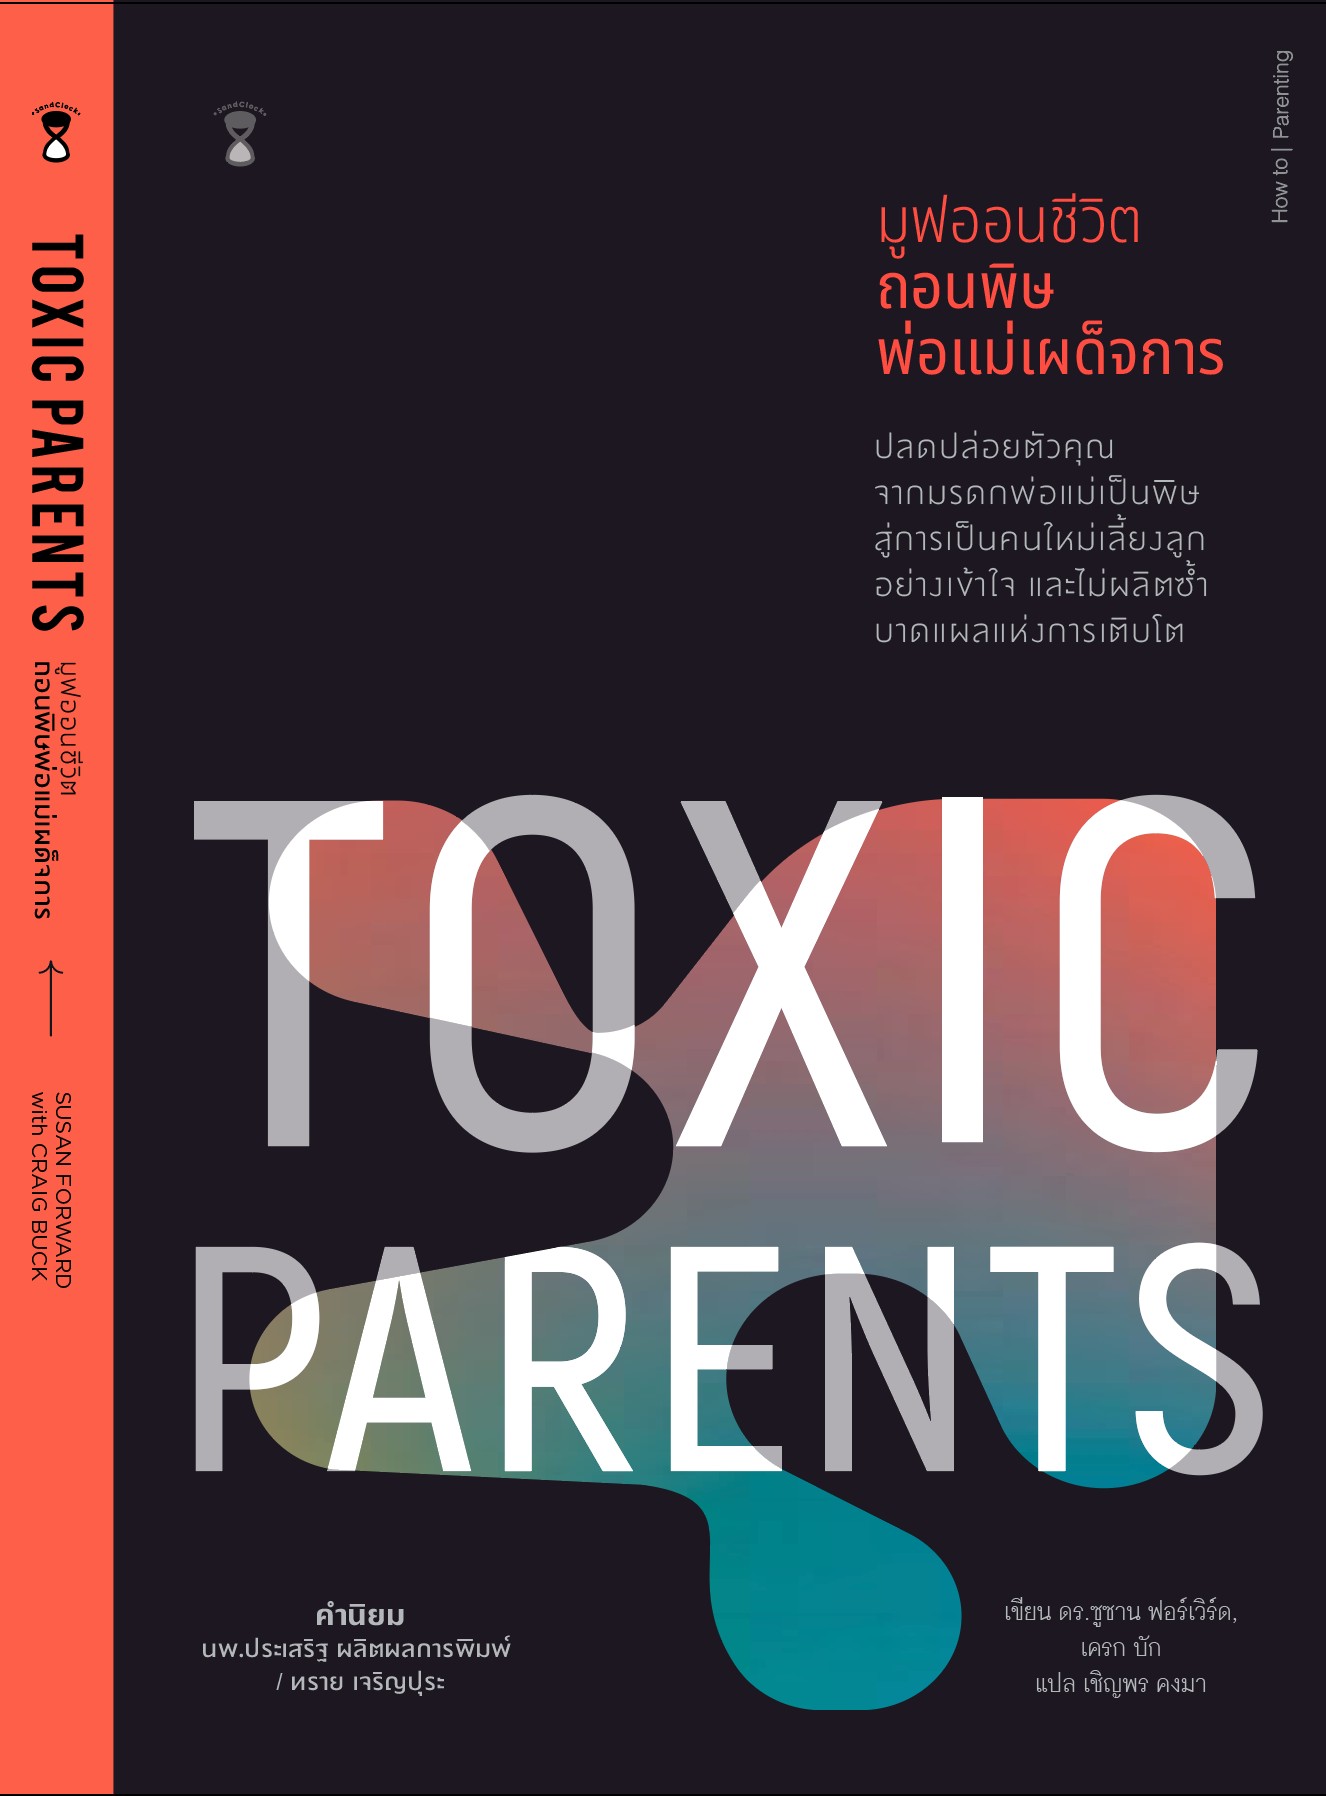 Toxic Parents มูฟออนชีวิต ถอนพิษพ่อแม่เผด็จการ 